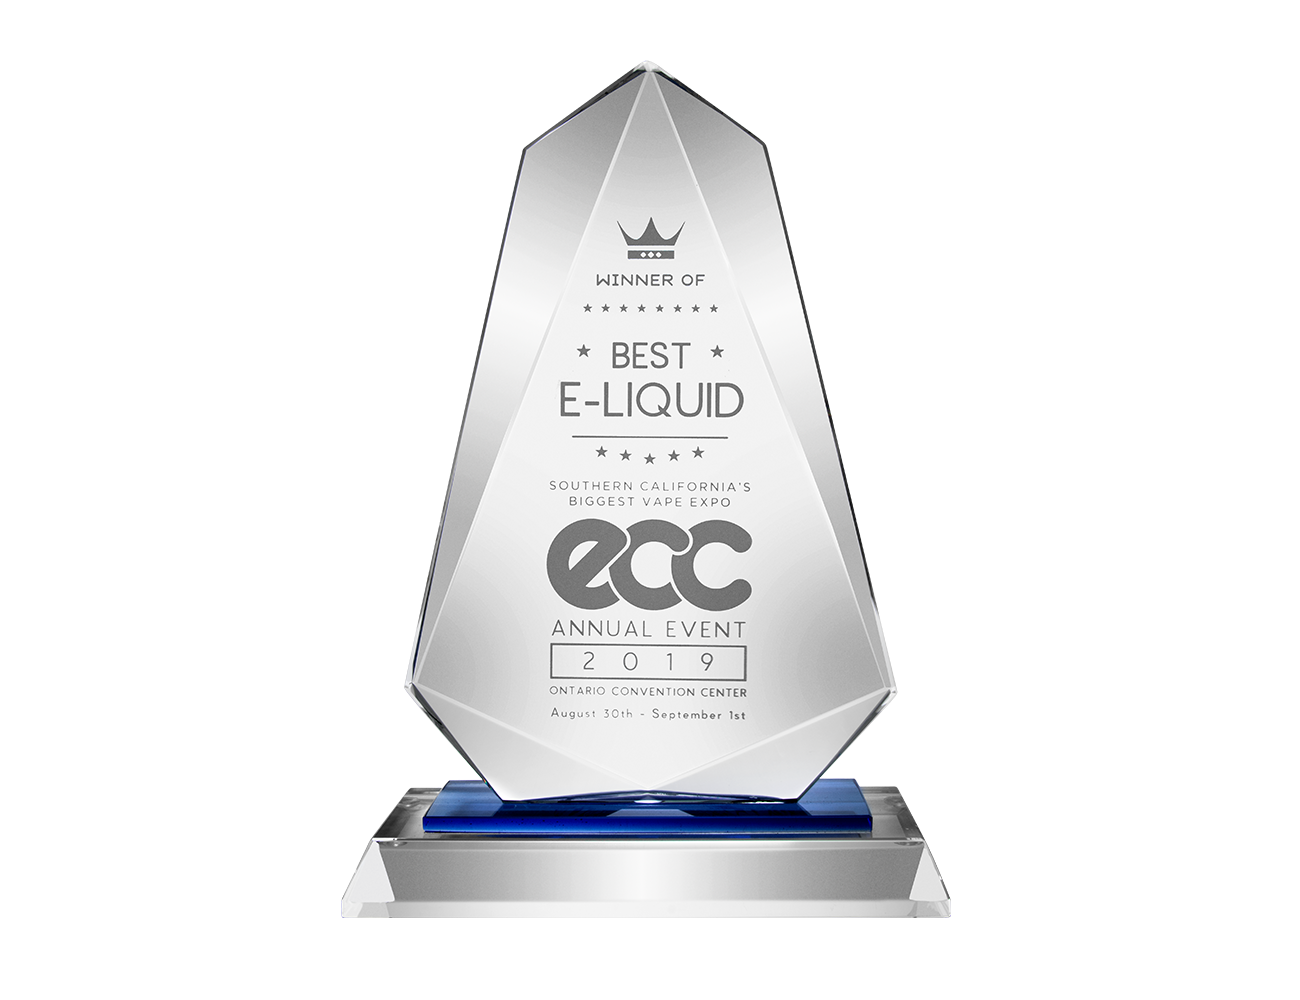 ORGNX Eliquids Best E-Liquid Award at ECC 2019